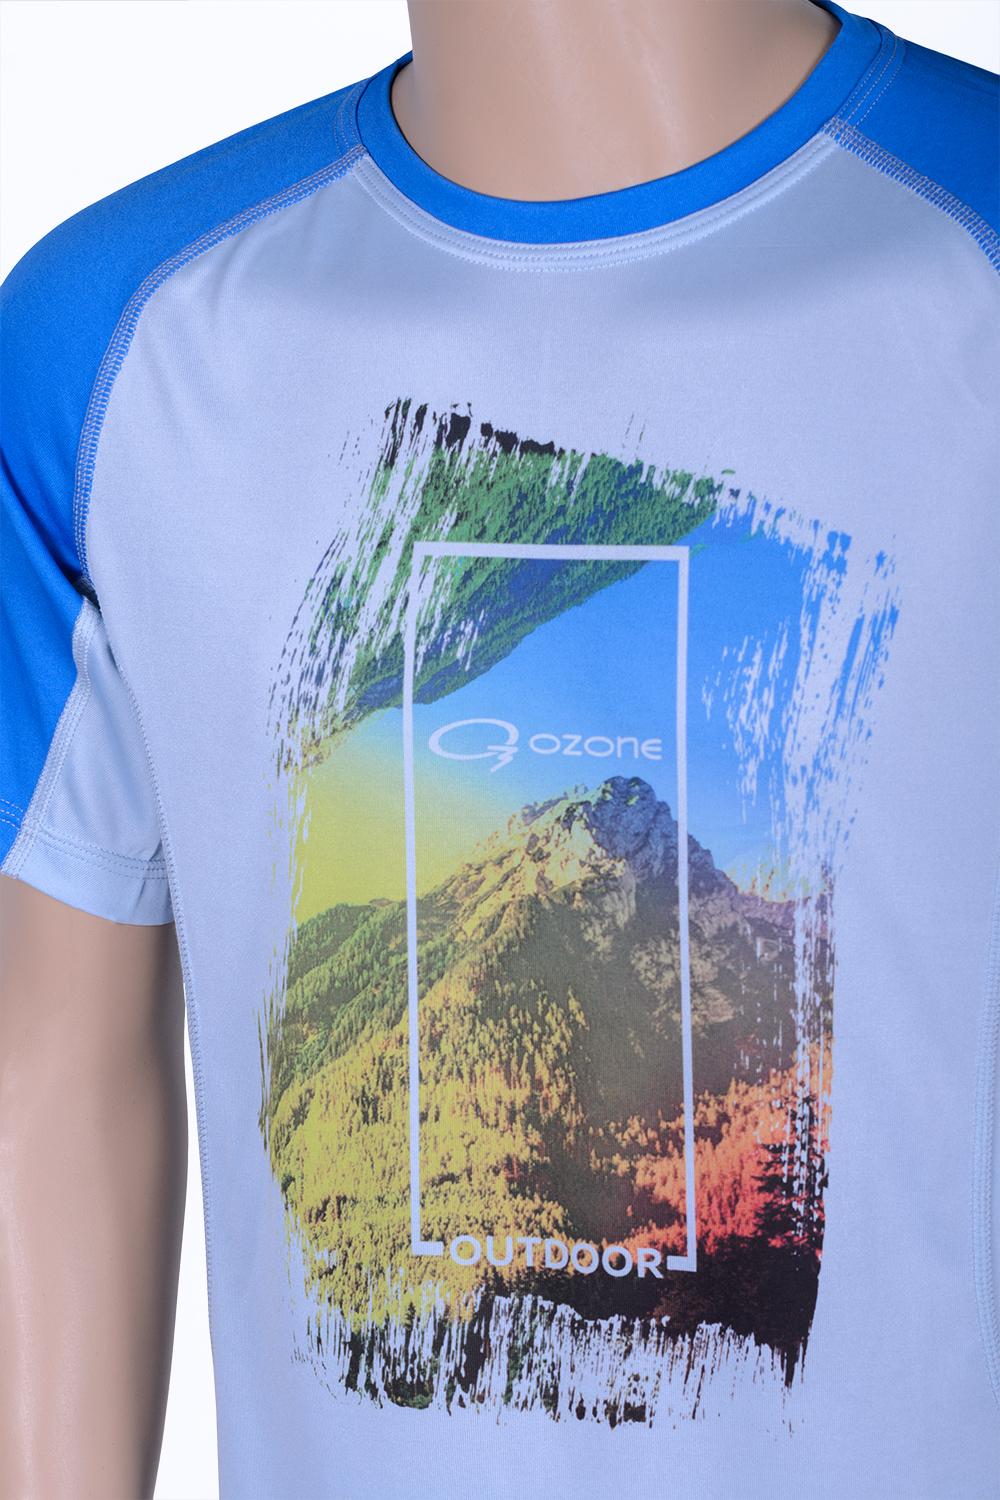 Озон футболки с длинным рукавом. Футболка Озон. Майка Озон. Крутые футболки на Озоне женские. Озон мужские футболки.